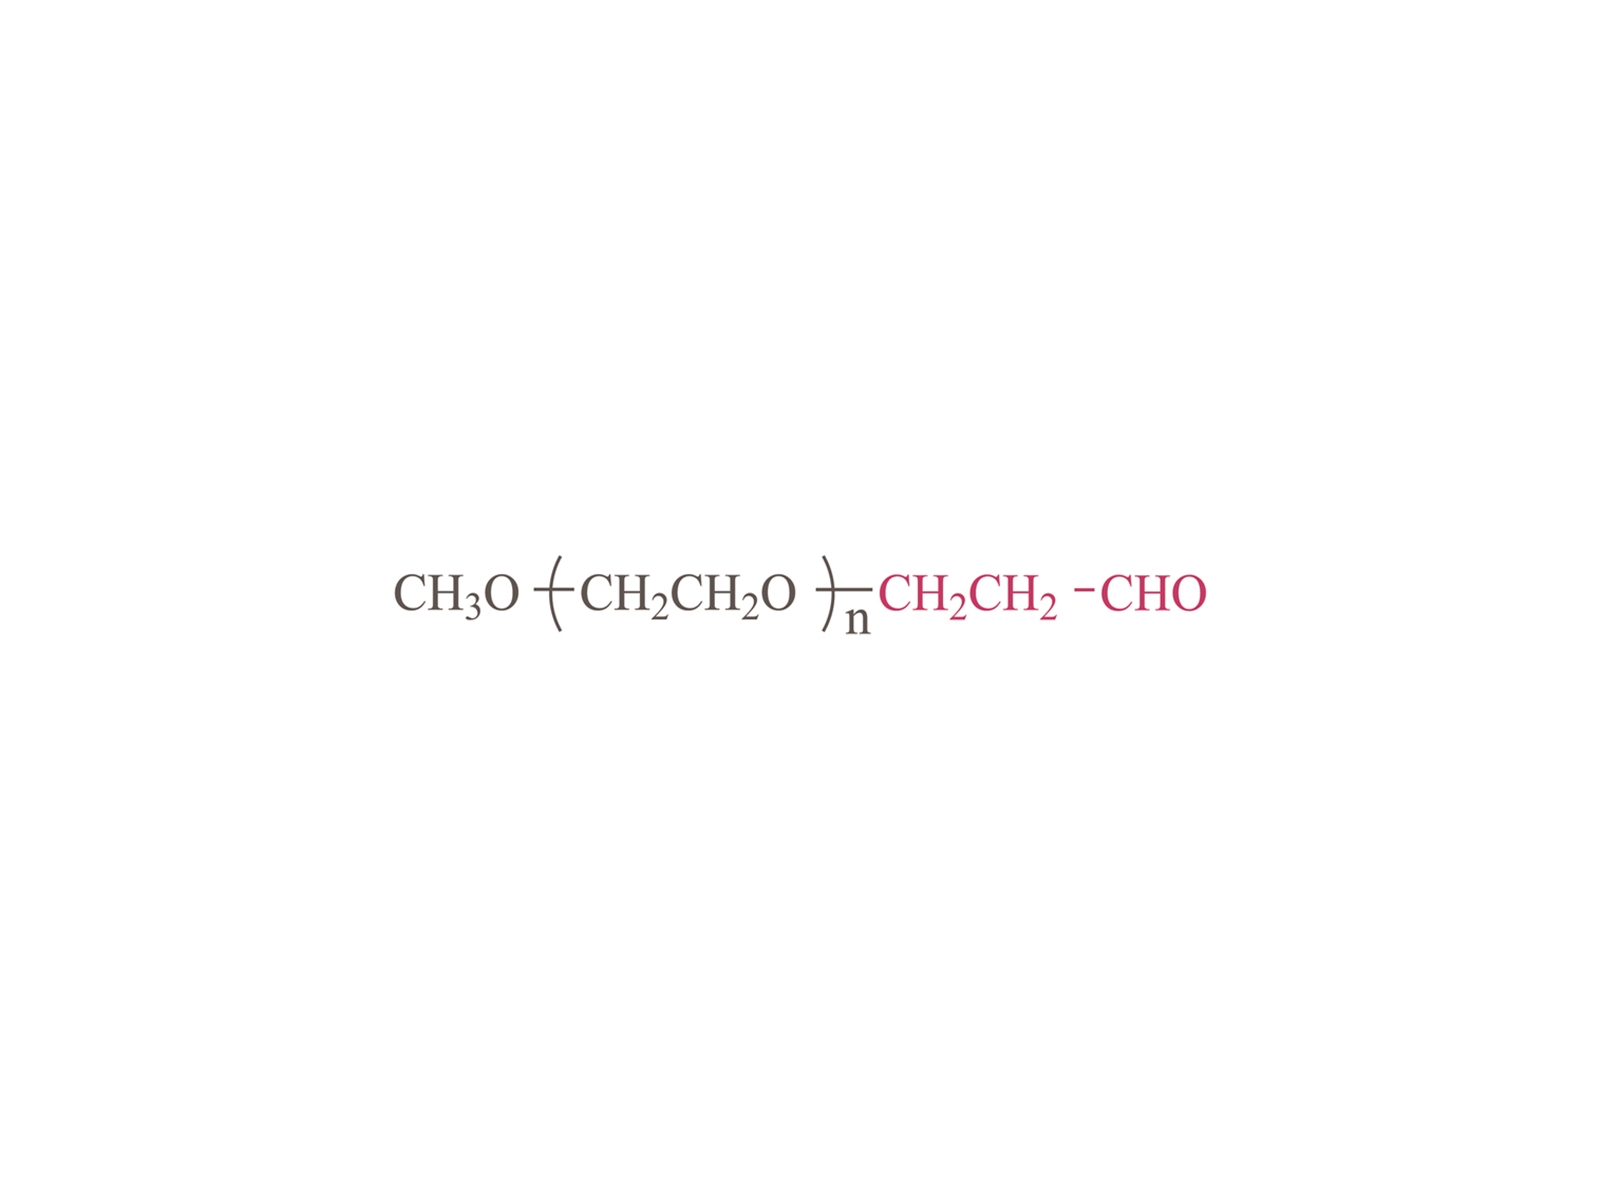 Methoxypoly (etilenglicol) propionaldehyde [MPEG-PALD] CAS: 125061-88-3